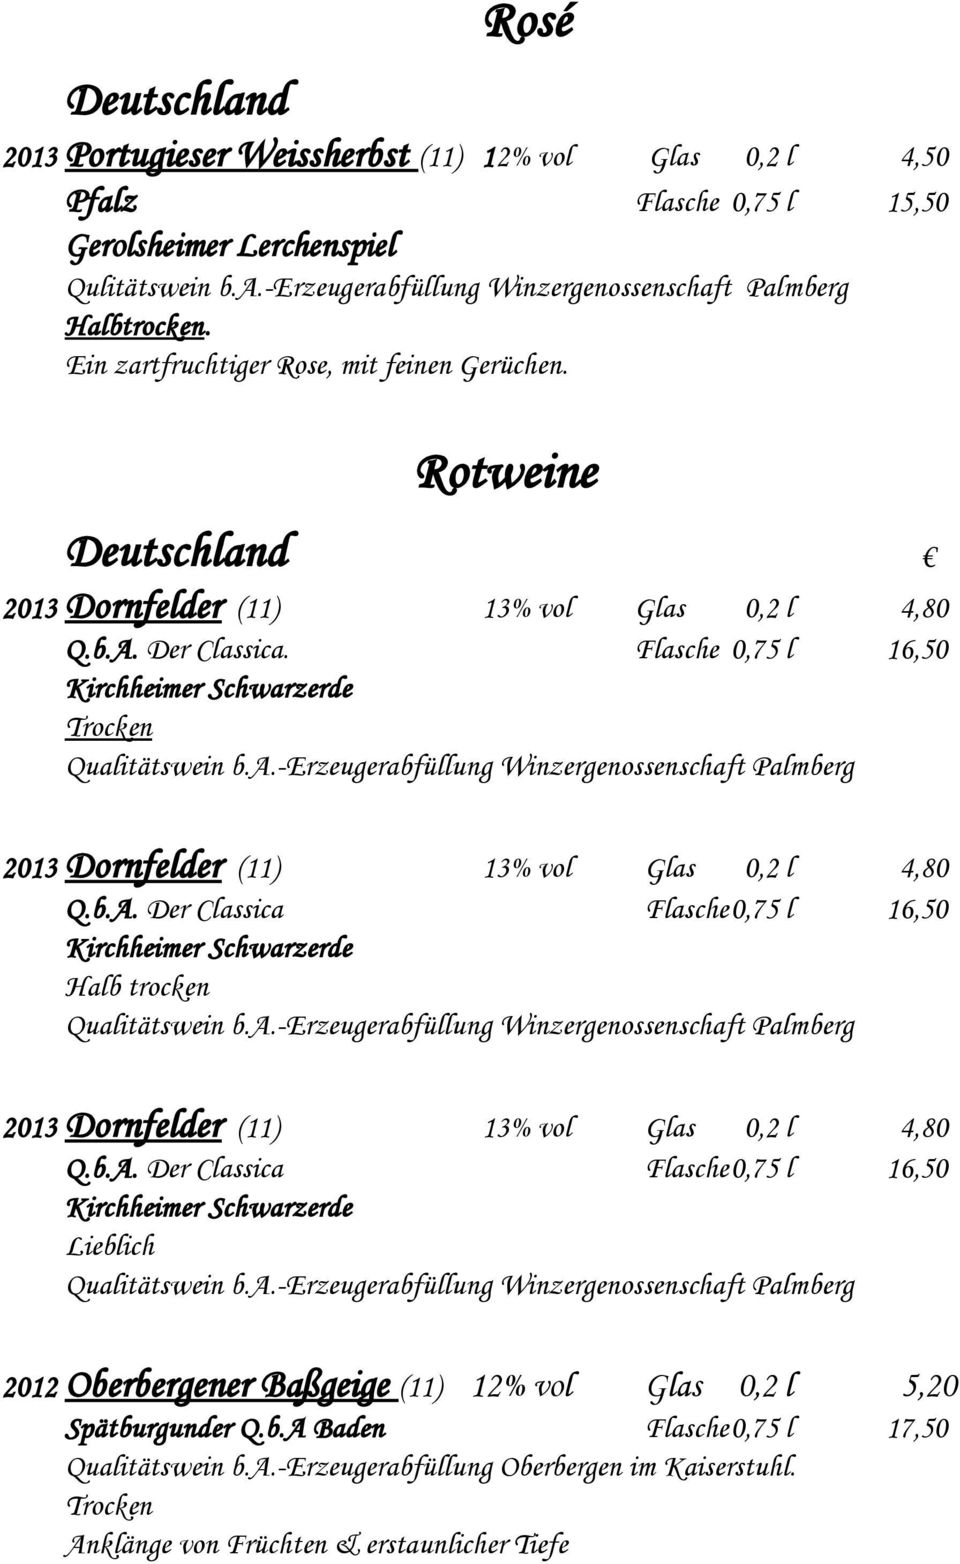 b.A. Der Classica Flasche0,75 l 16,50 Kirchheimer Schwarzerde Halb trocken Qualitätswein b.a.-erzeugerabfüllung Winzergenossenschaft Palmberg 2013 Dornfelder (11) 13% vol Glas 0,2 l 4,80 Q.b.A. Der Classica Flasche0,75 l 16,50 Kirchheimer Schwarzerde Lieblich Qualitätswein b.